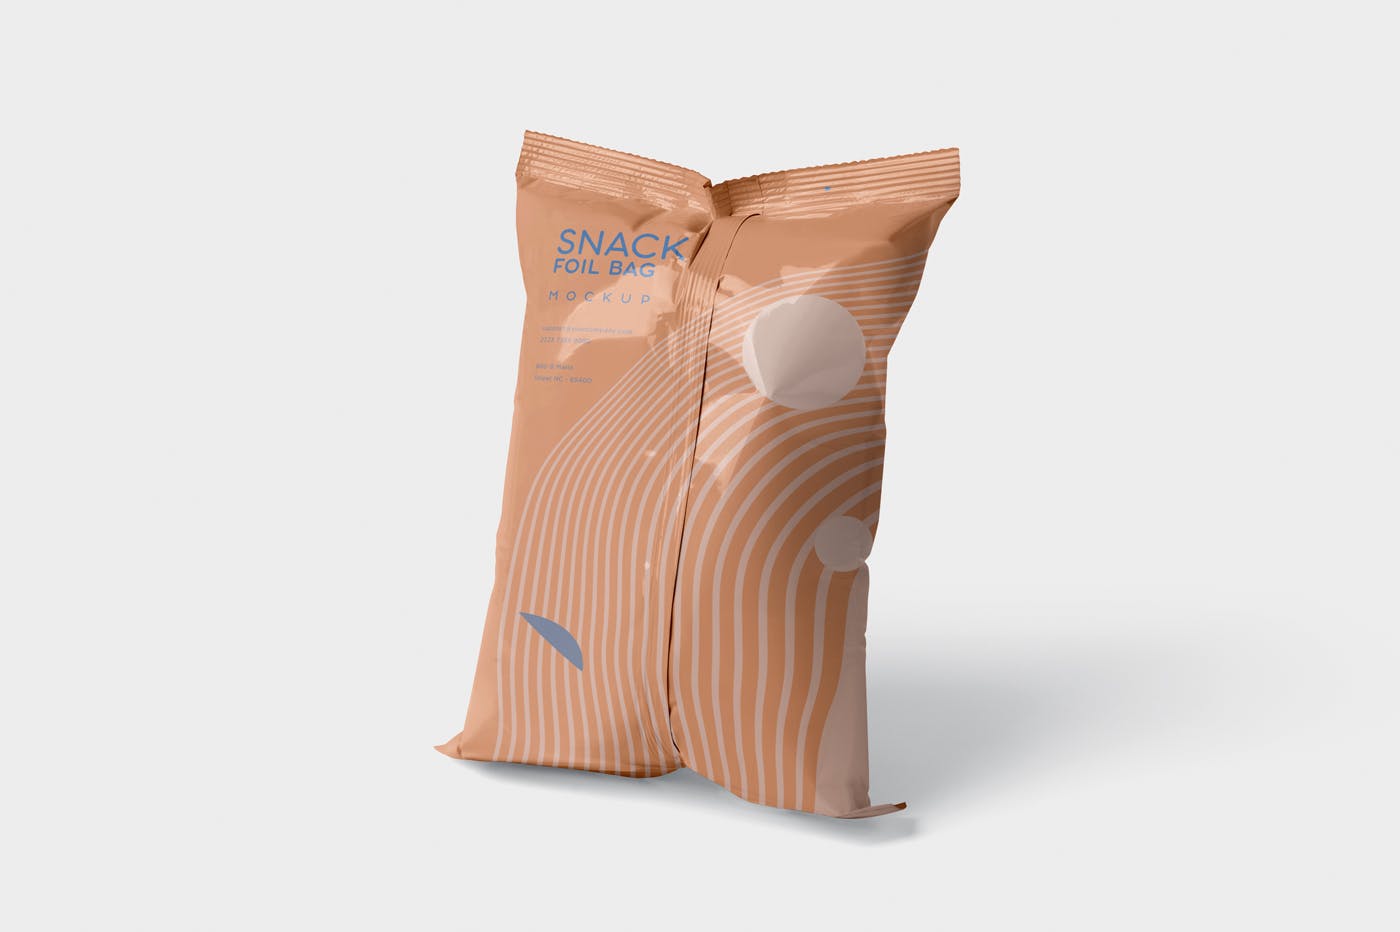 小吃零食铝箔袋/塑料包装袋设计图素材中国精选 Snack Foil Bag Mockup – Plastic插图(2)